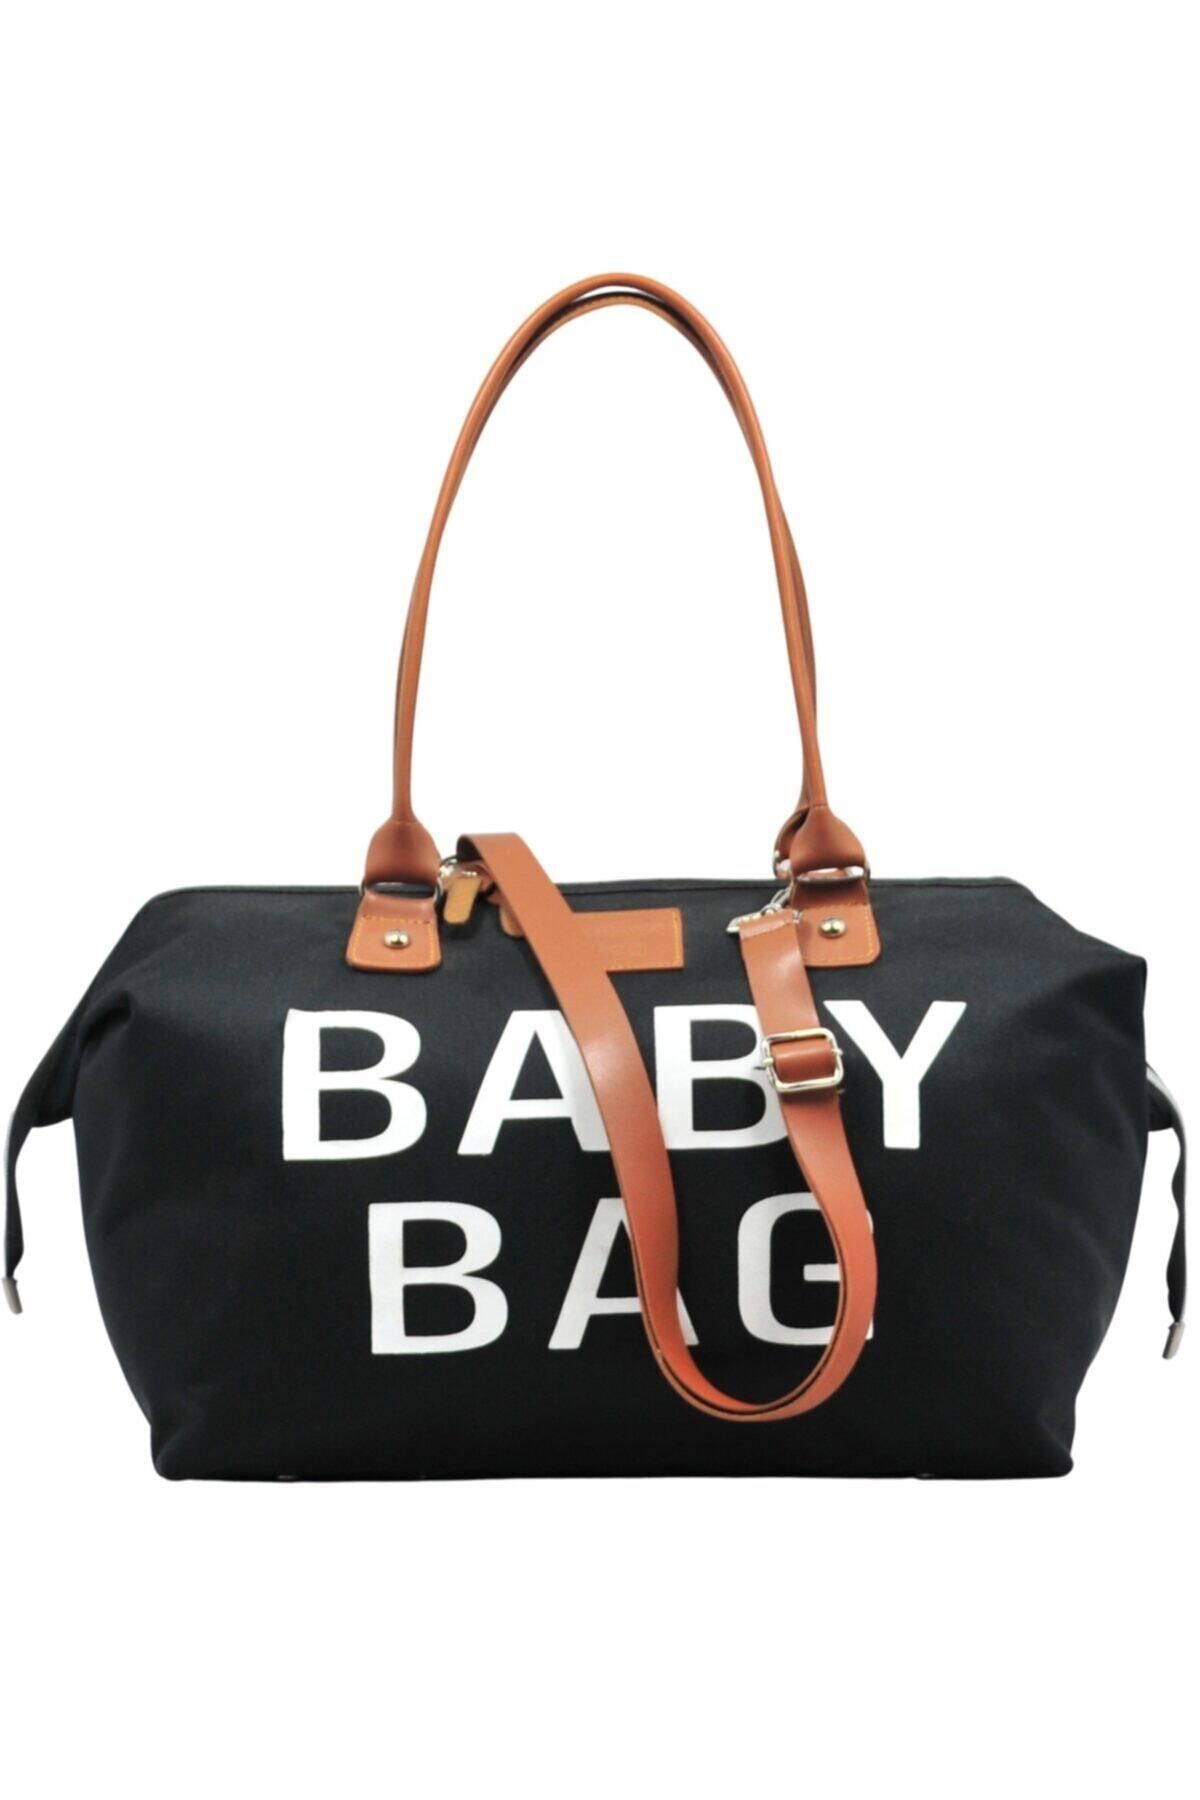 Babysi Baby Bag Tasarım Siyah Anne Bebek Bakım Ve Kadın Çantası